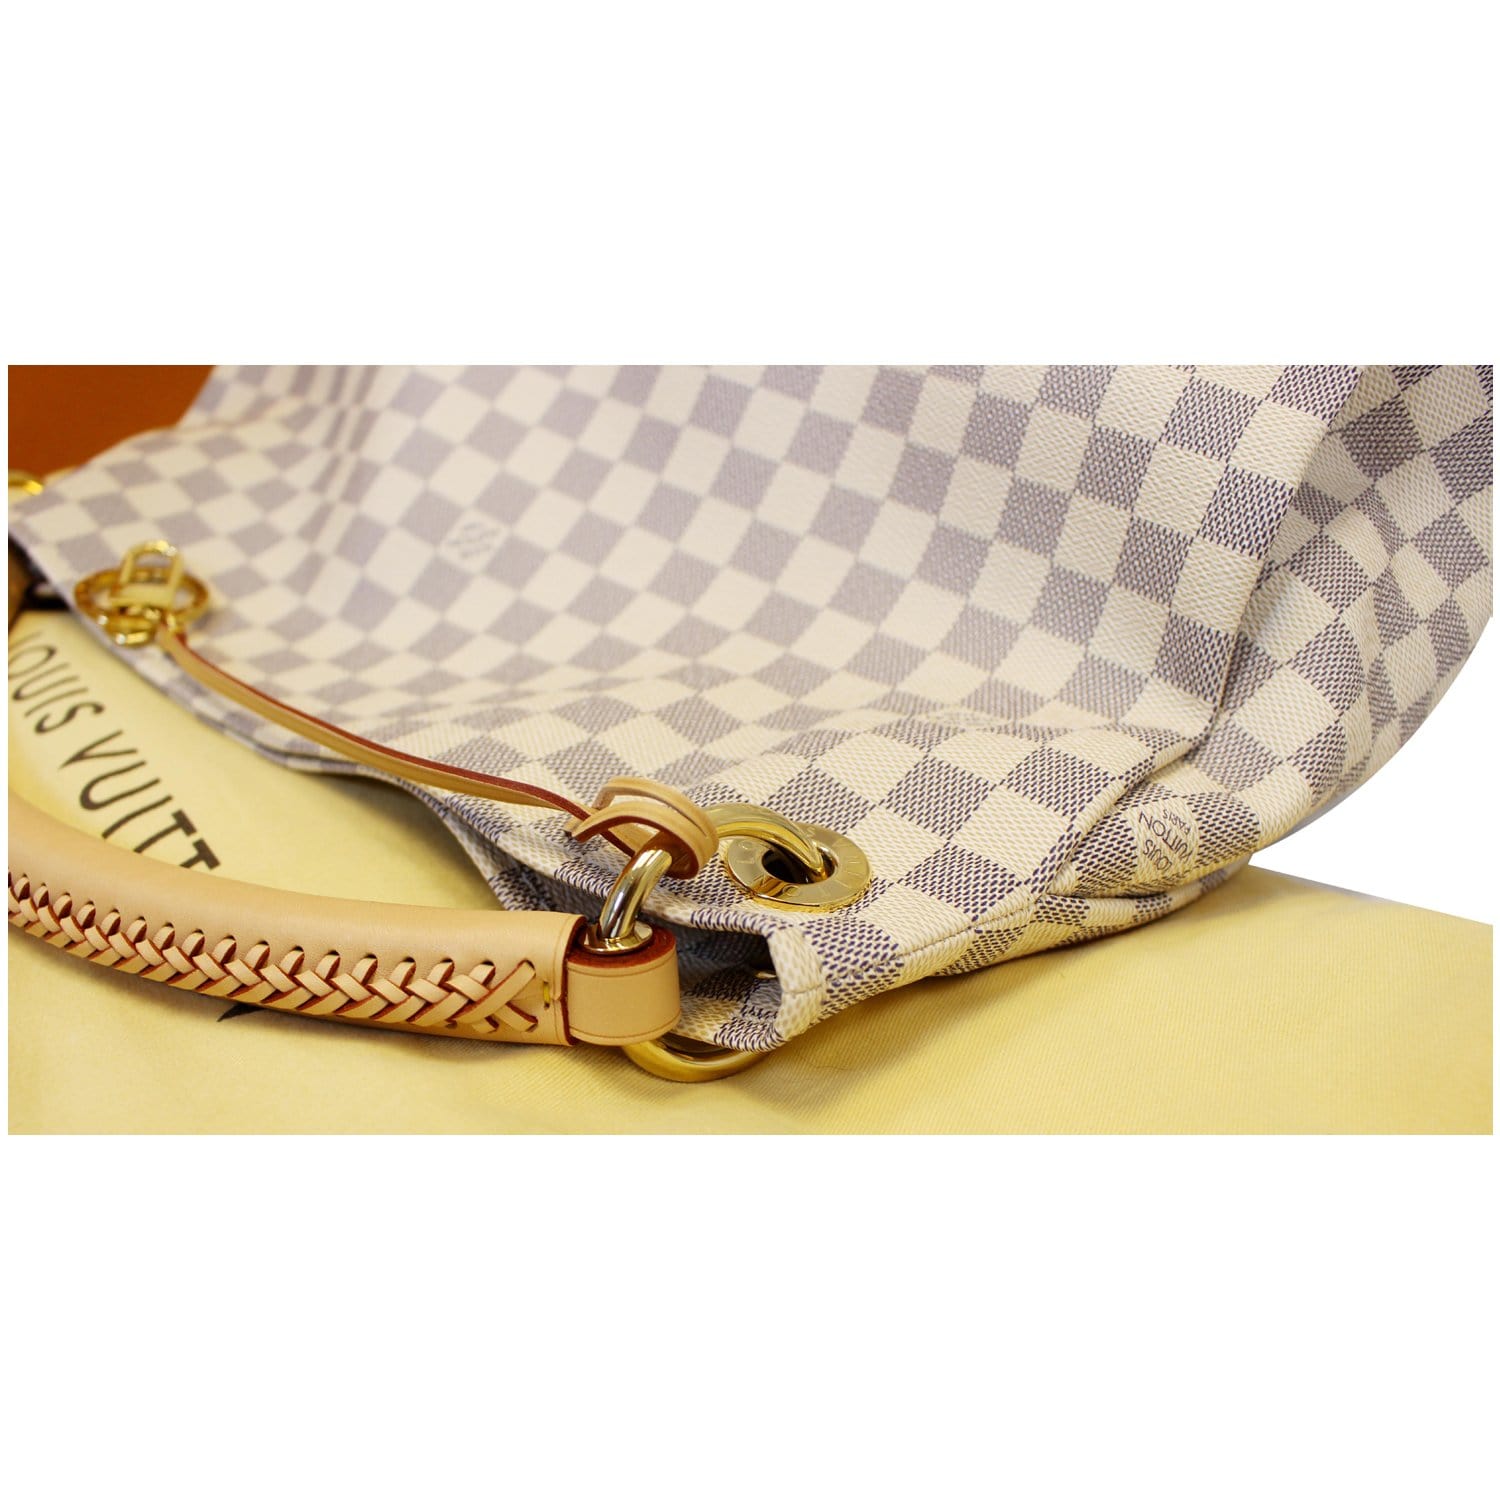 LOUIS VUITTON Artsy MM Damier Azur Shoulder Bag White-E5475-SOLD 